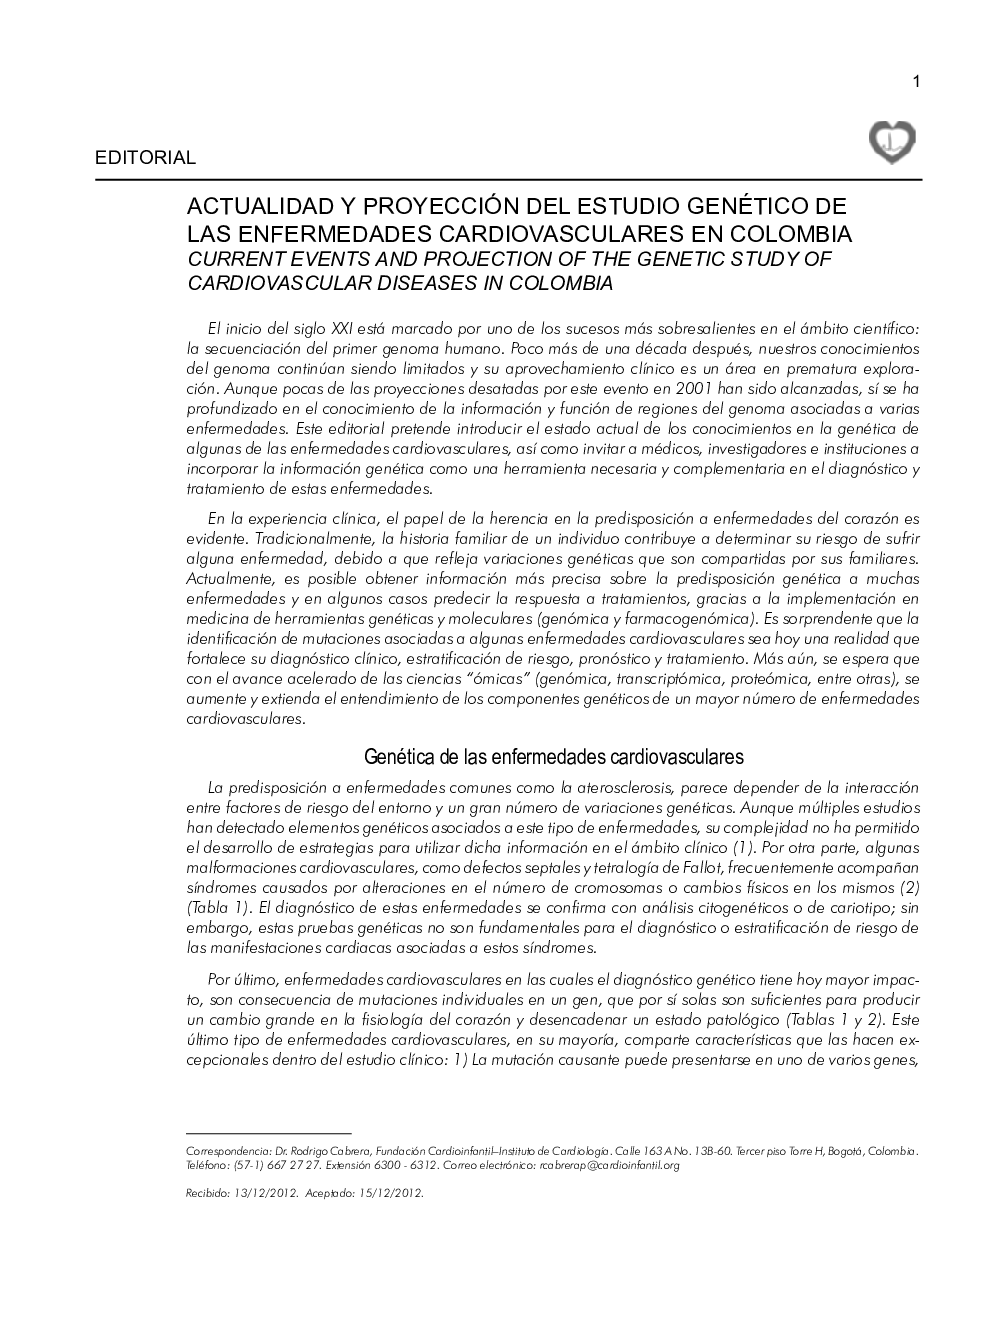 Actualidad y proyección del estudio genético de las enfermedades cardiovasculares en colombia